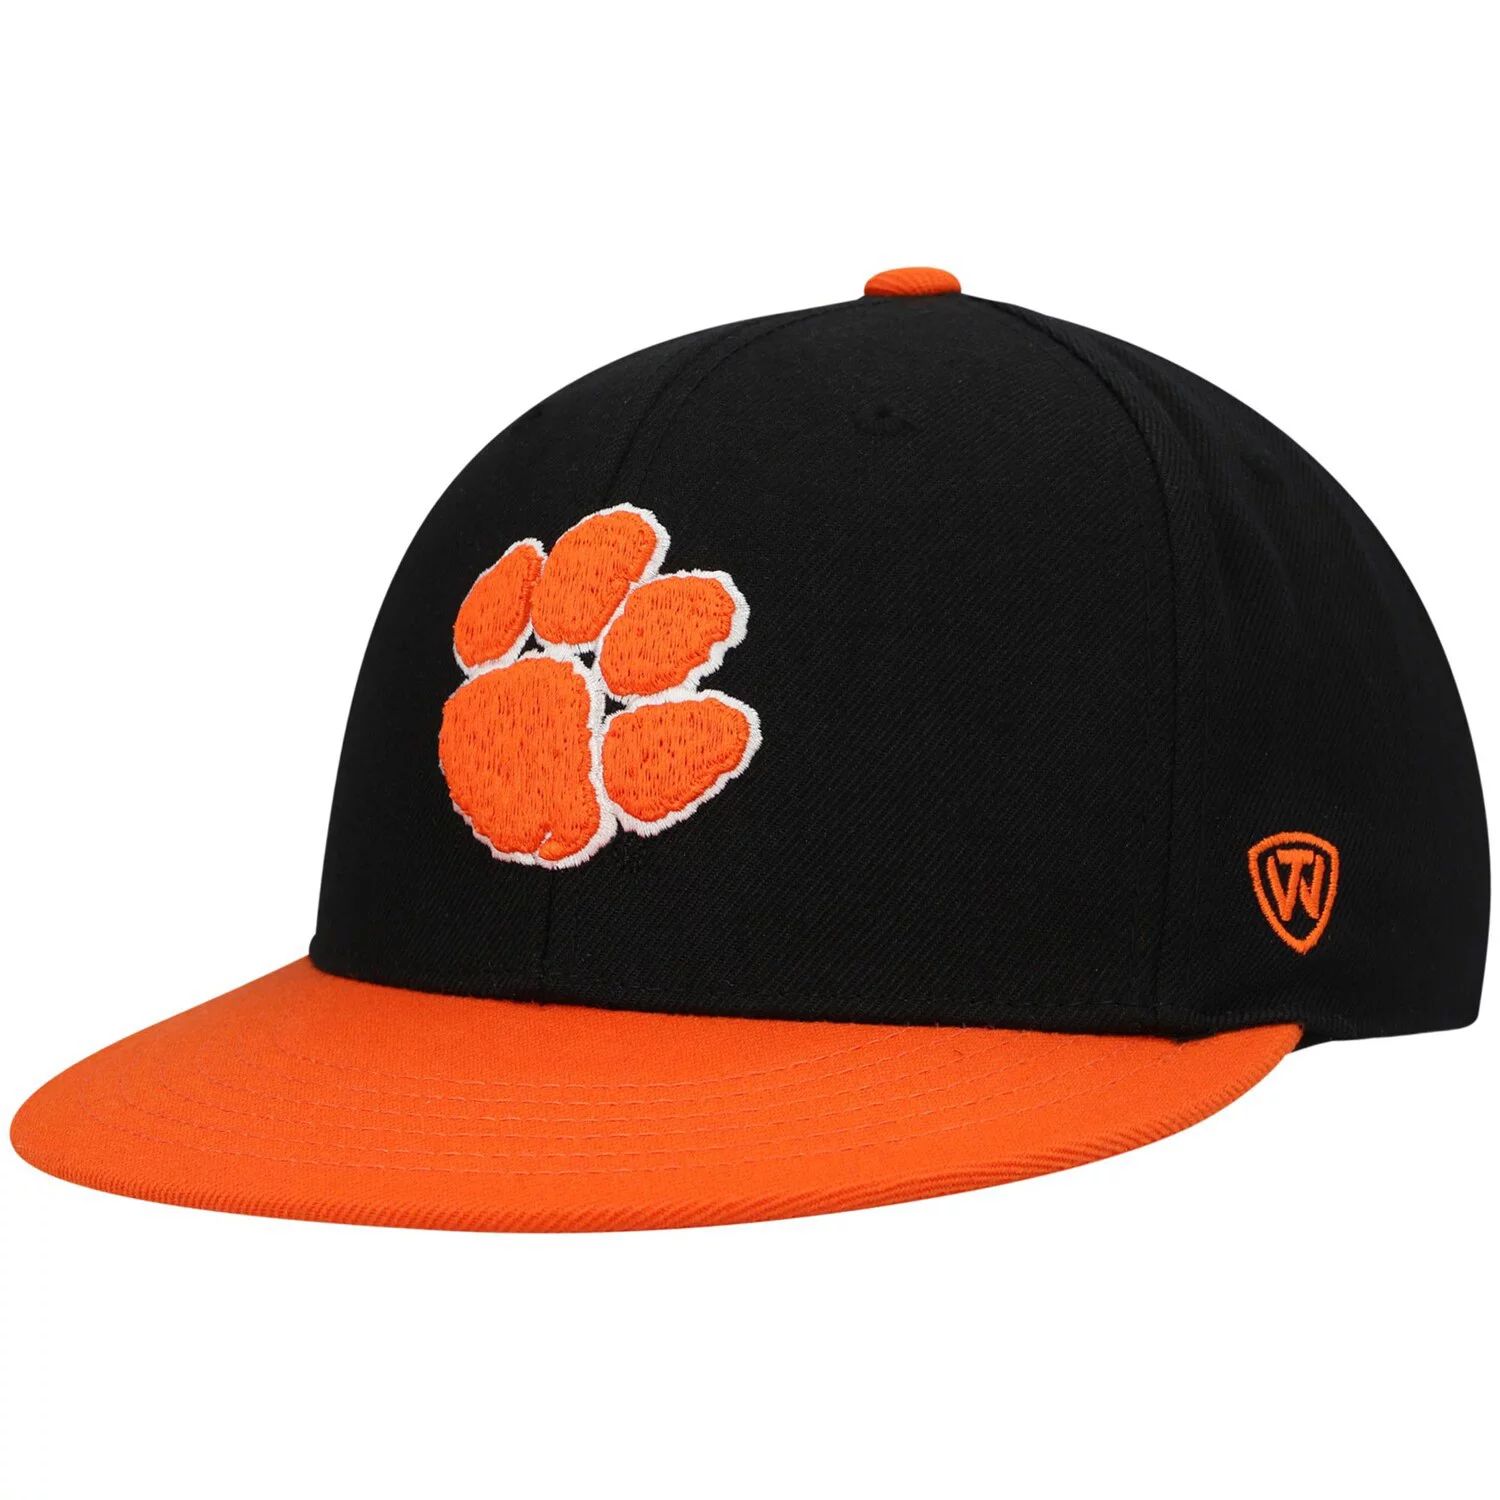 Мужская двухцветная приталенная шляпа Top of the World черного/оранжевого цвета Clemson Tigers Team Color